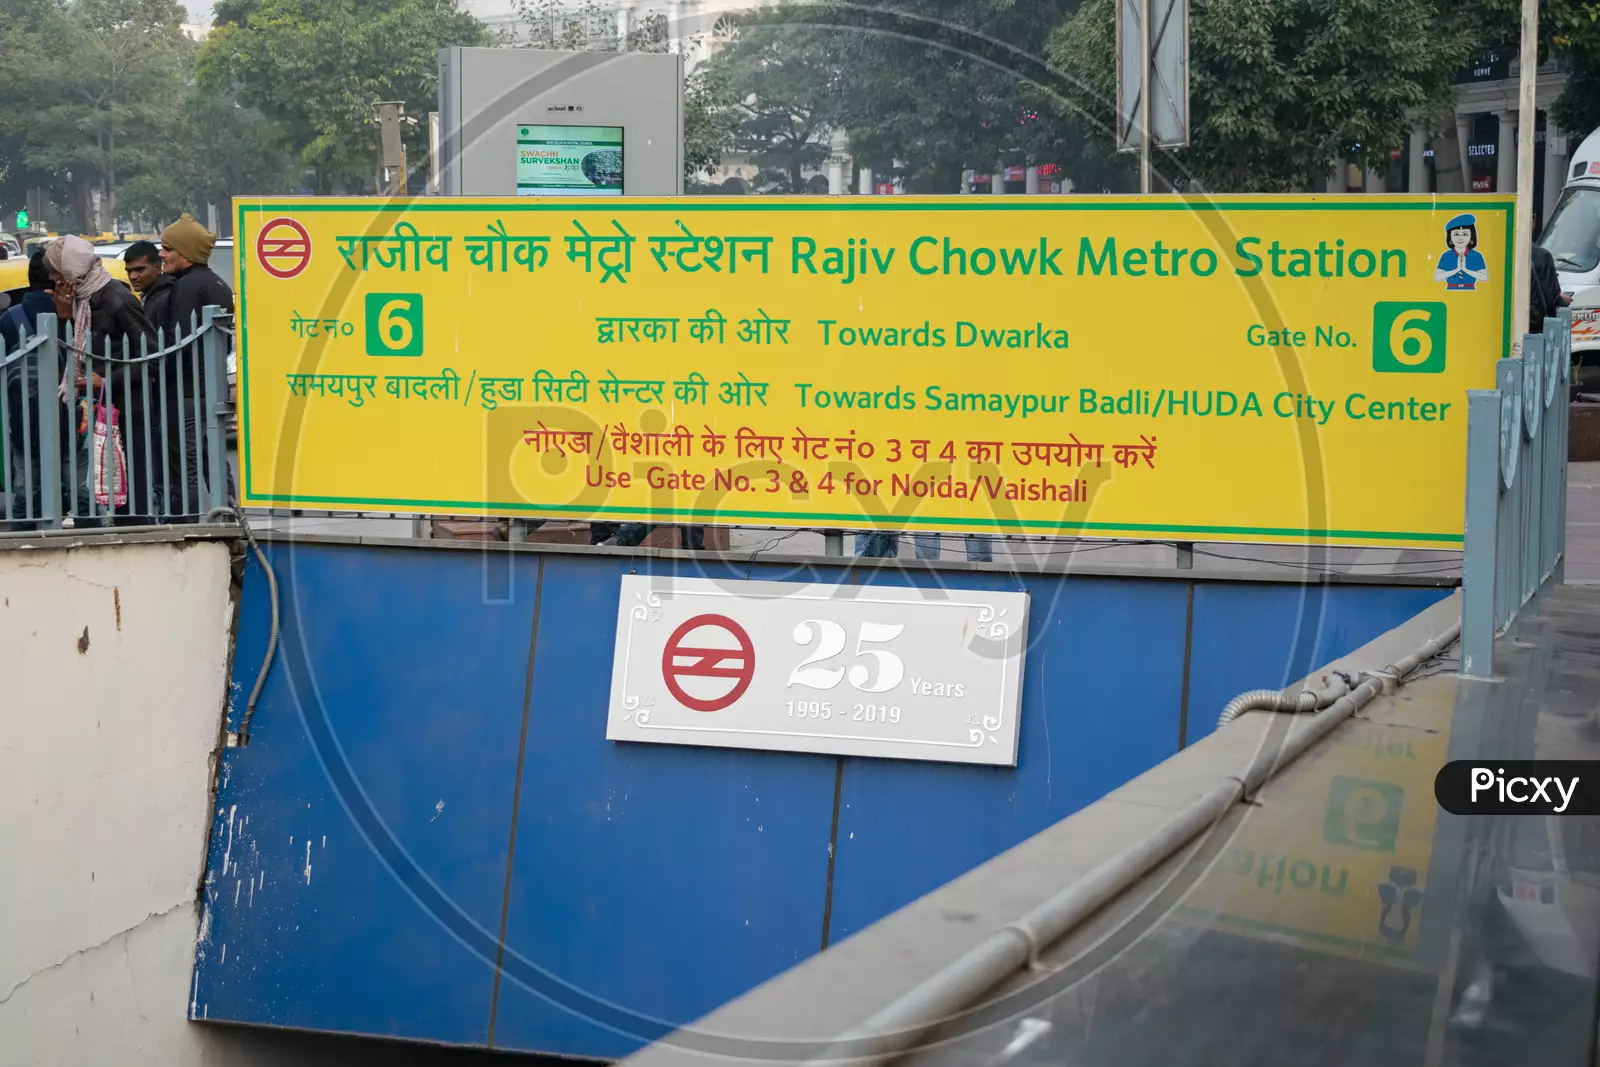 Image of Rajiv Chowk Metro Station Gate no 6-LR031790-Picxy